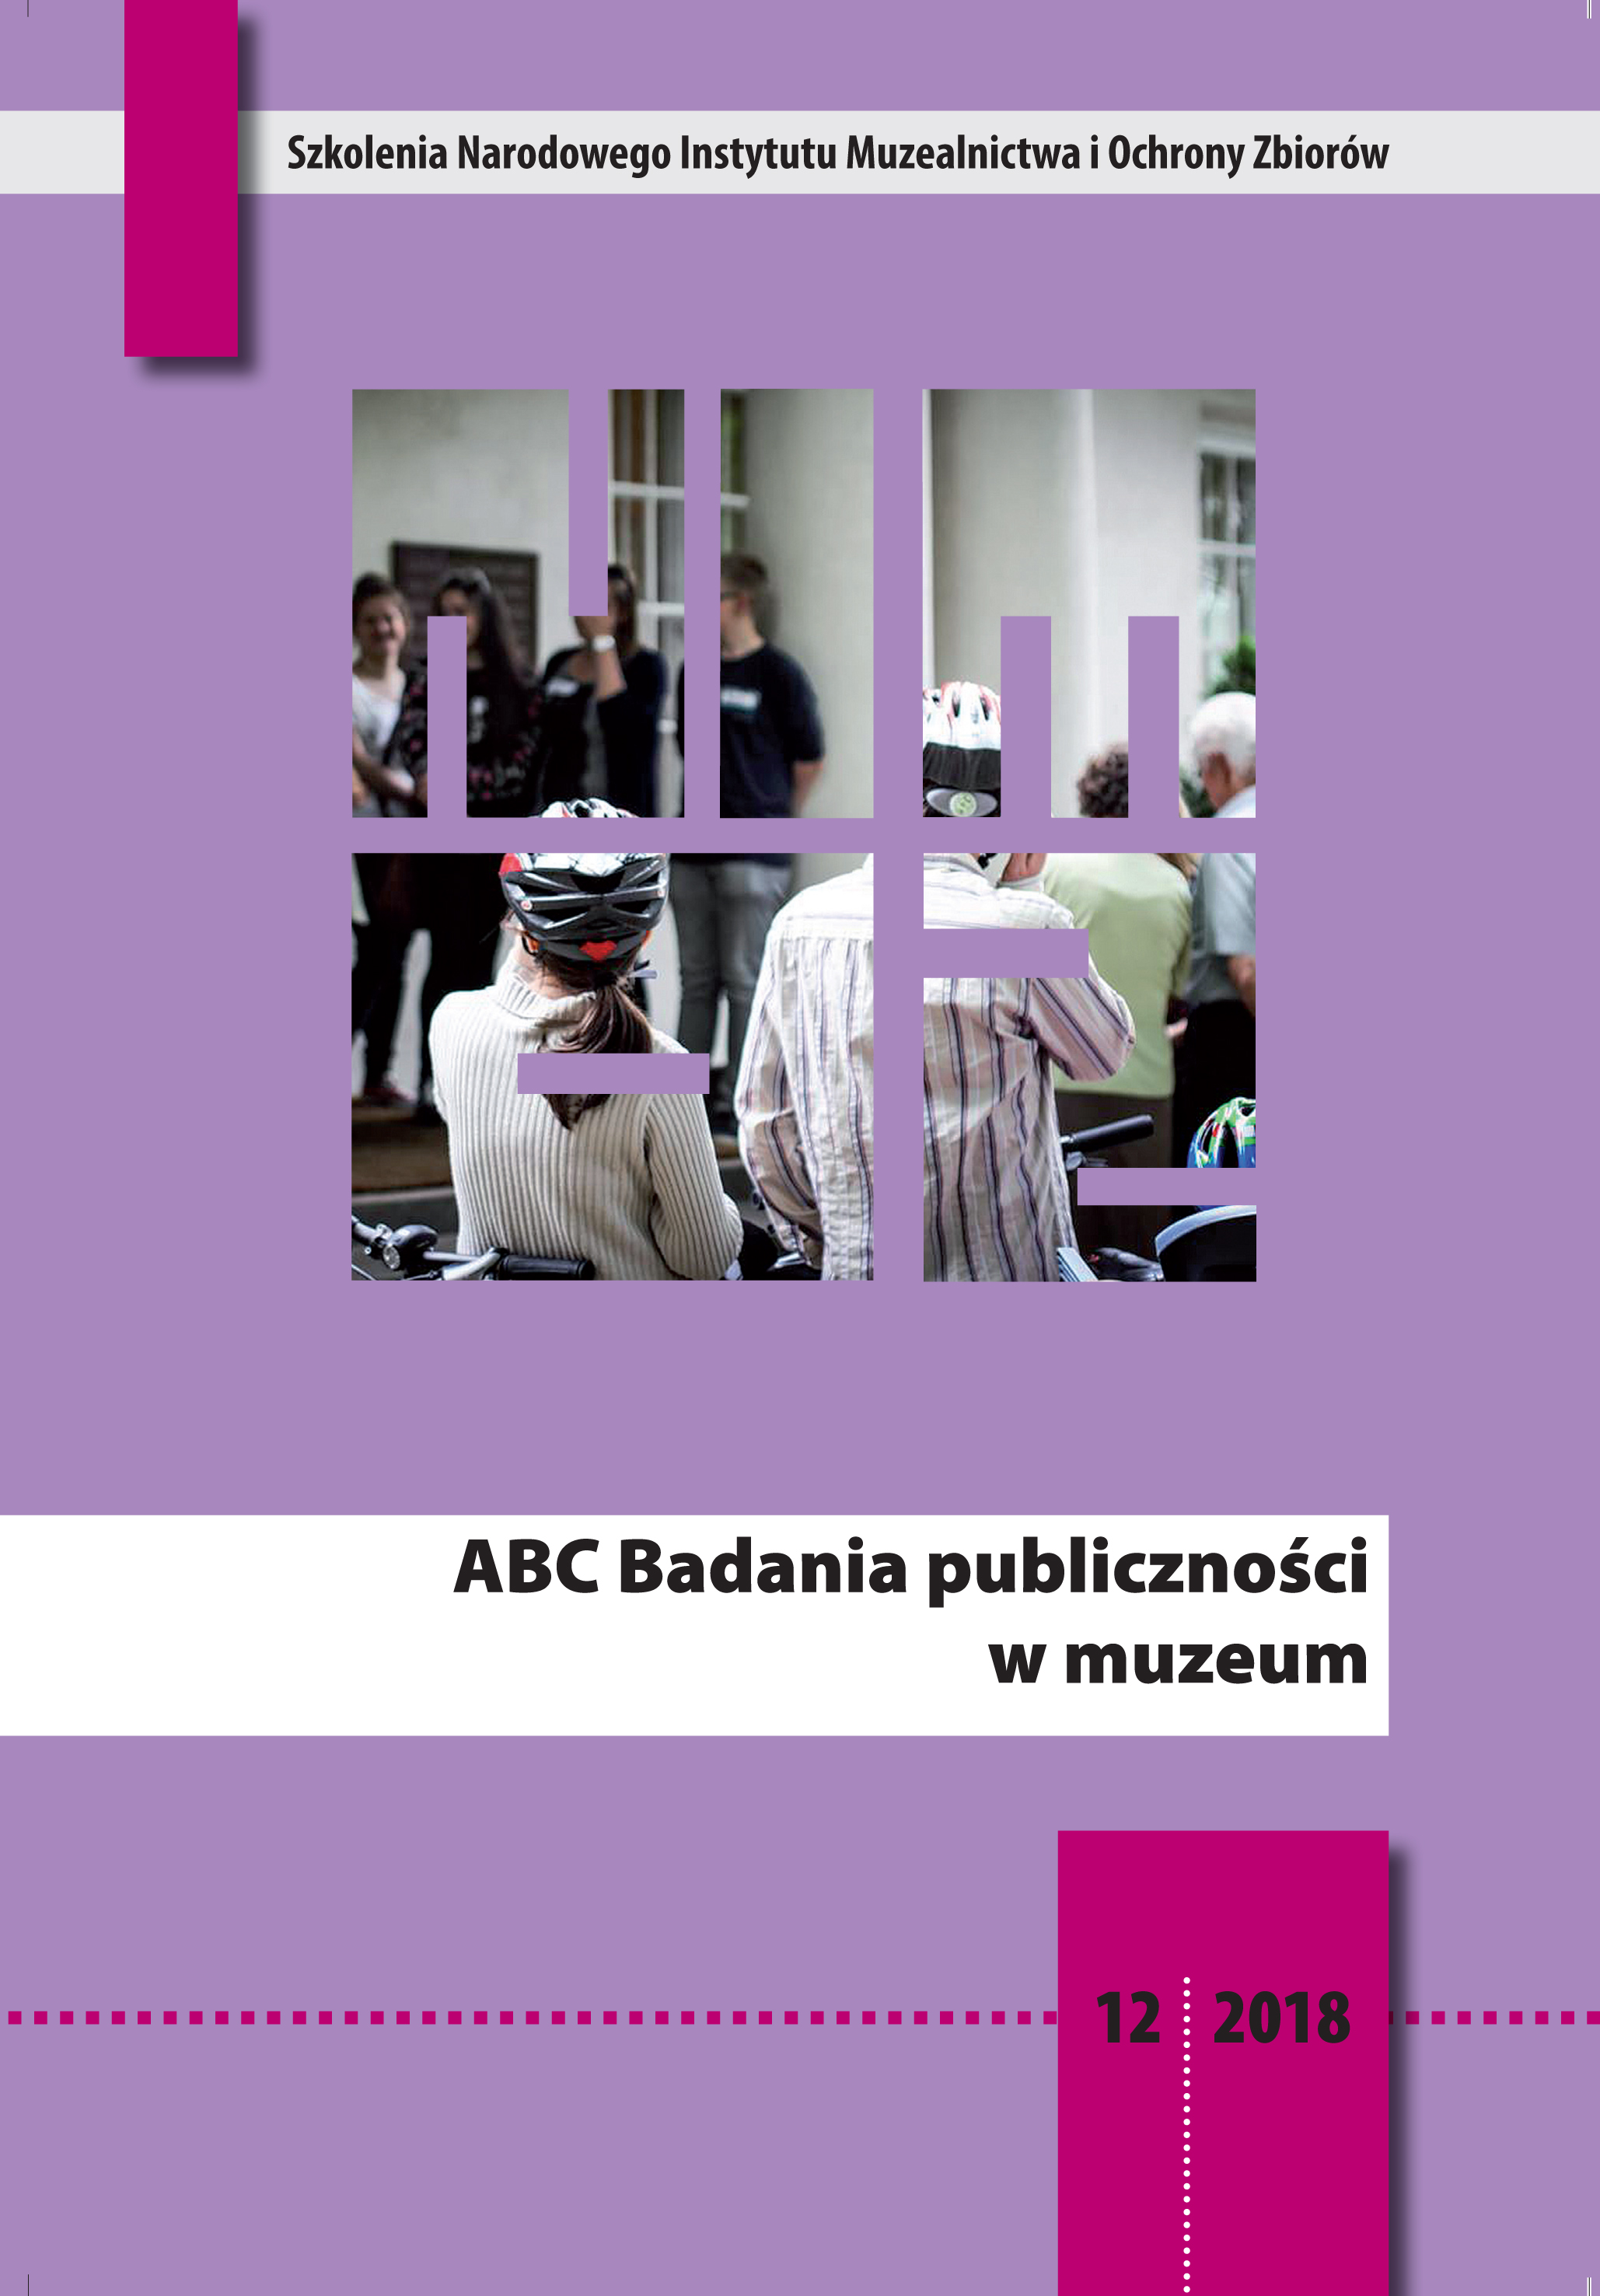 ABC Badania publiczności w muzeum